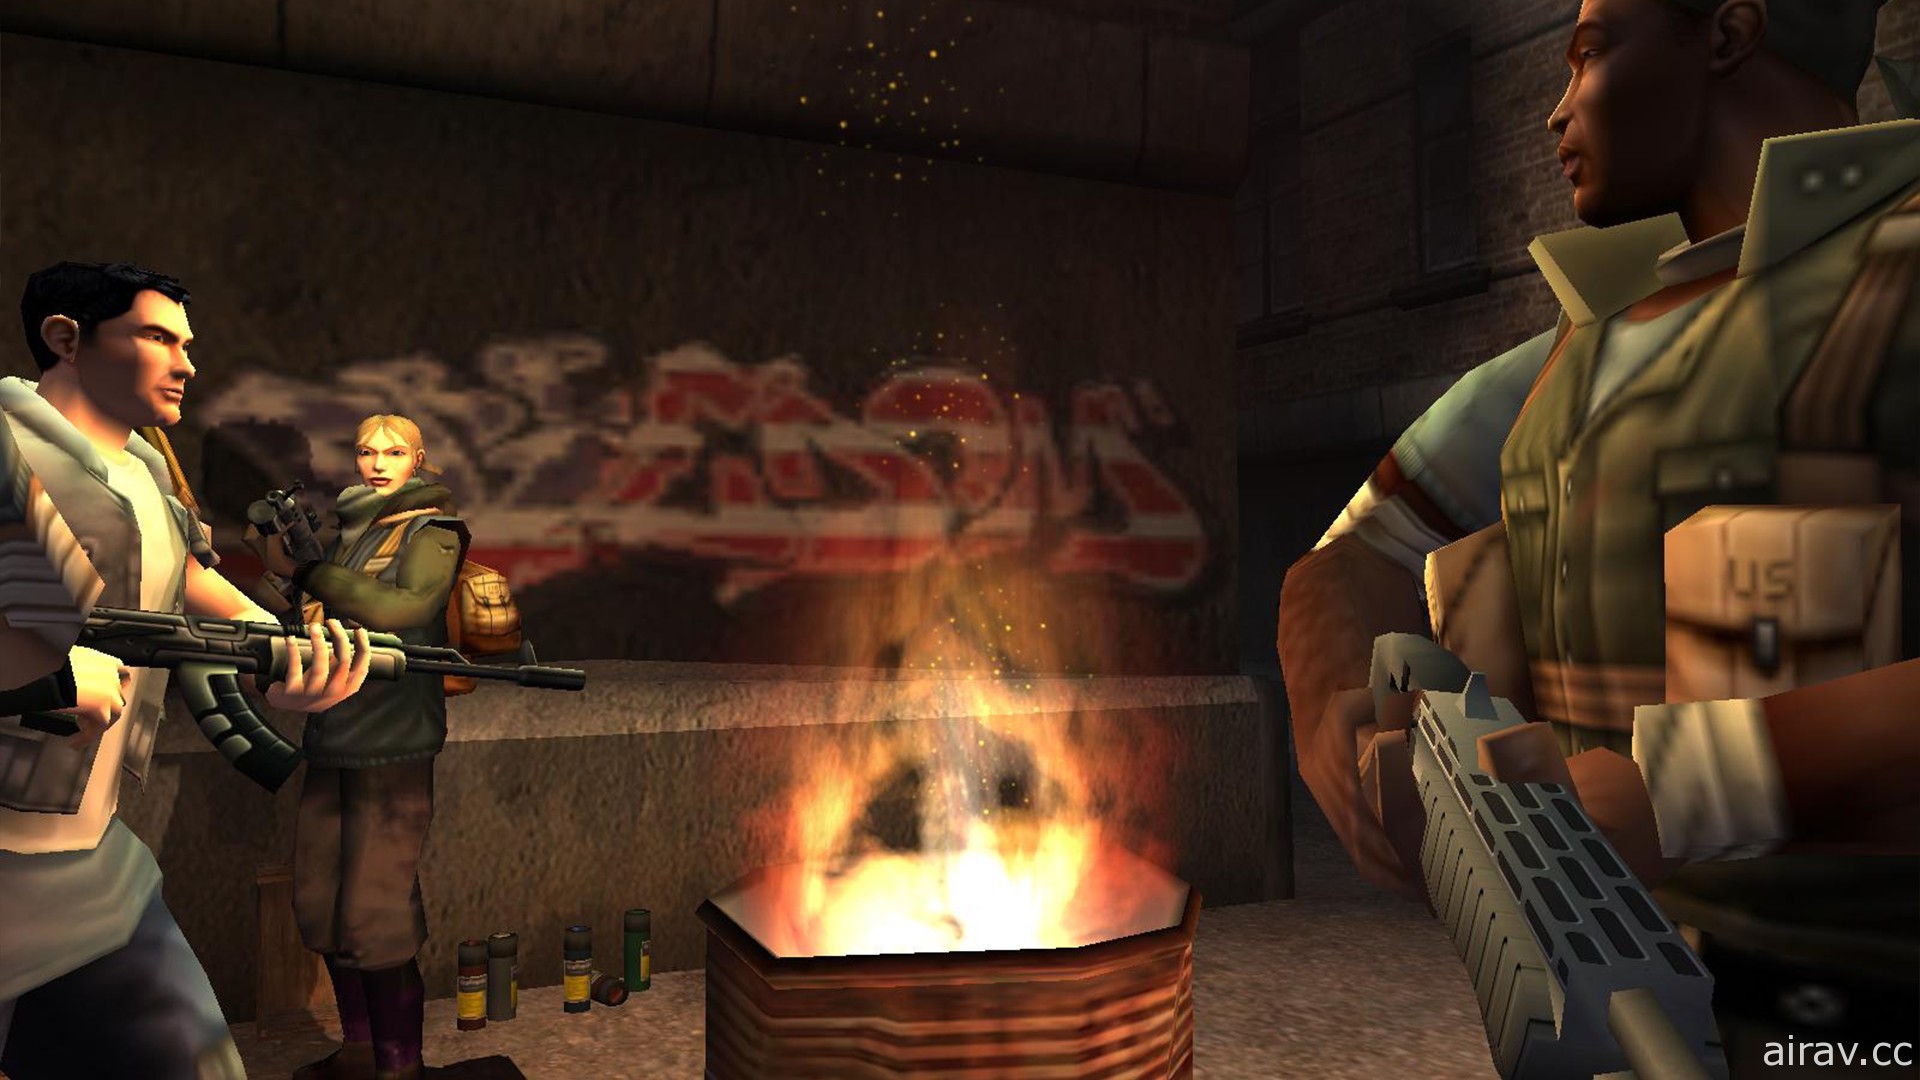 知名射击游戏《自由战士 Freedom Fighters》相隔 17 年以 PC 数位版形式再度登场